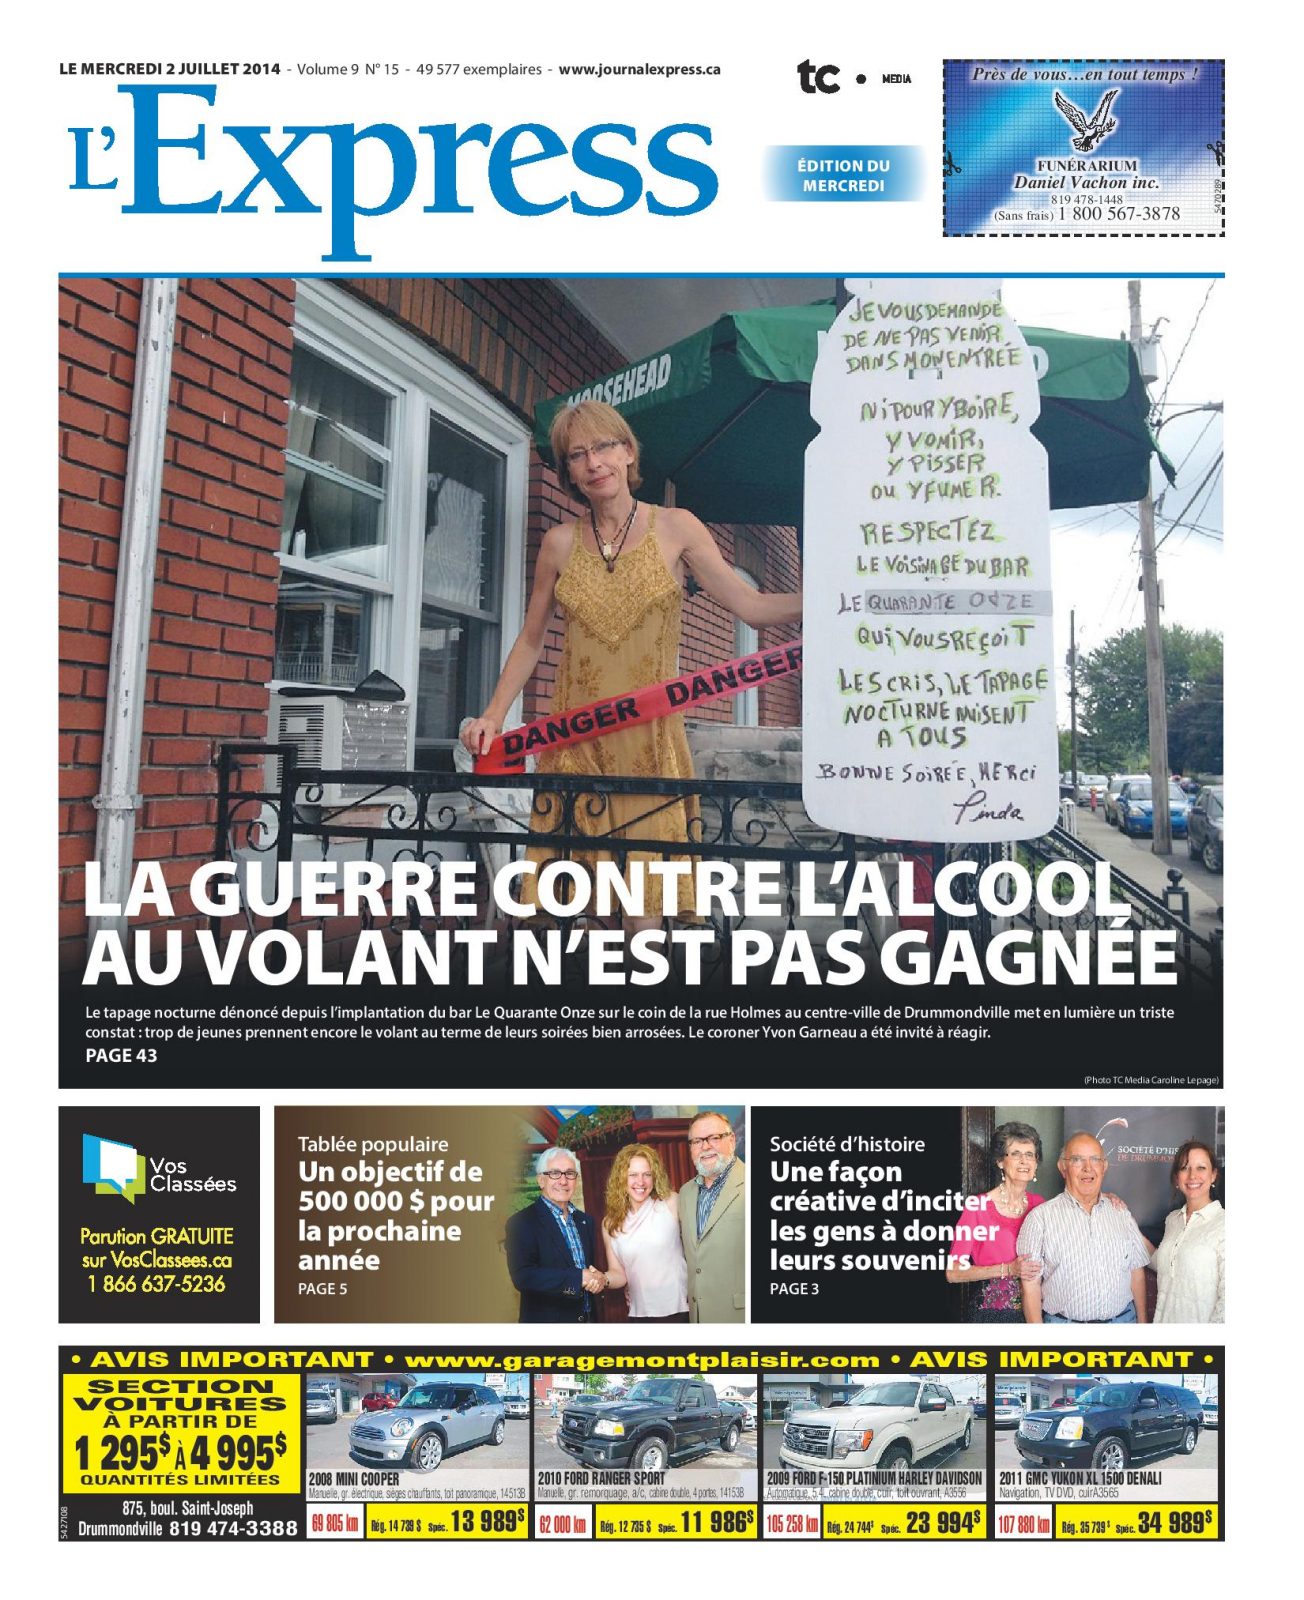 La une de L’Express du 2 juillet 2014